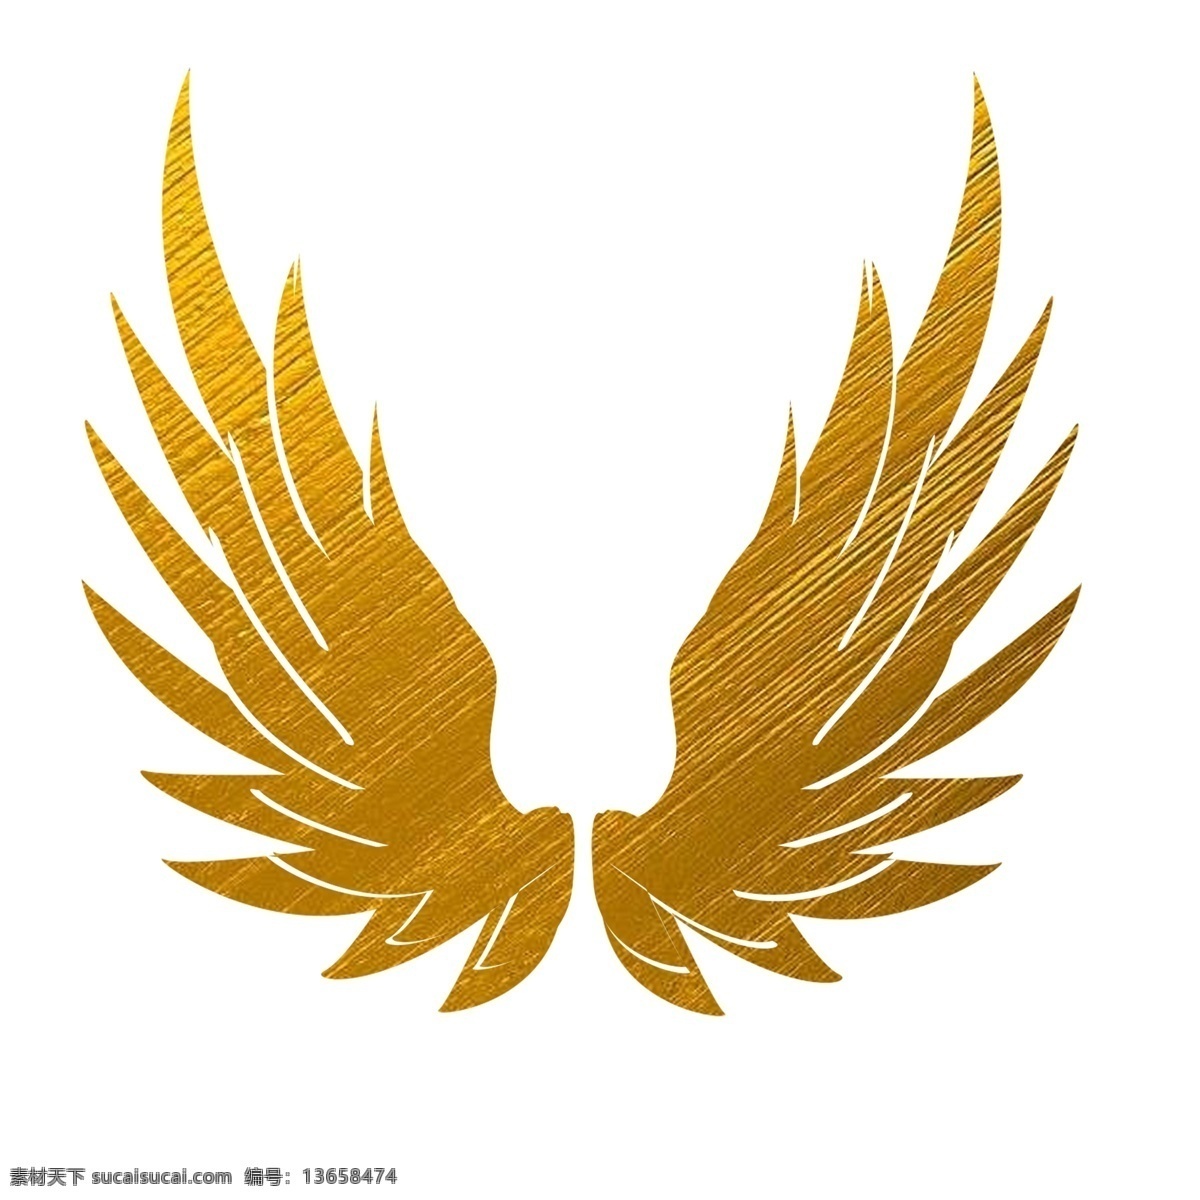 金色 渐变 天使 翅膀 免 抠 金色翅膀 飞翔元素 翅膀素材 翅膀元素 飞翔 金色元素 天使元素 天使素材 装饰元素 装饰素材